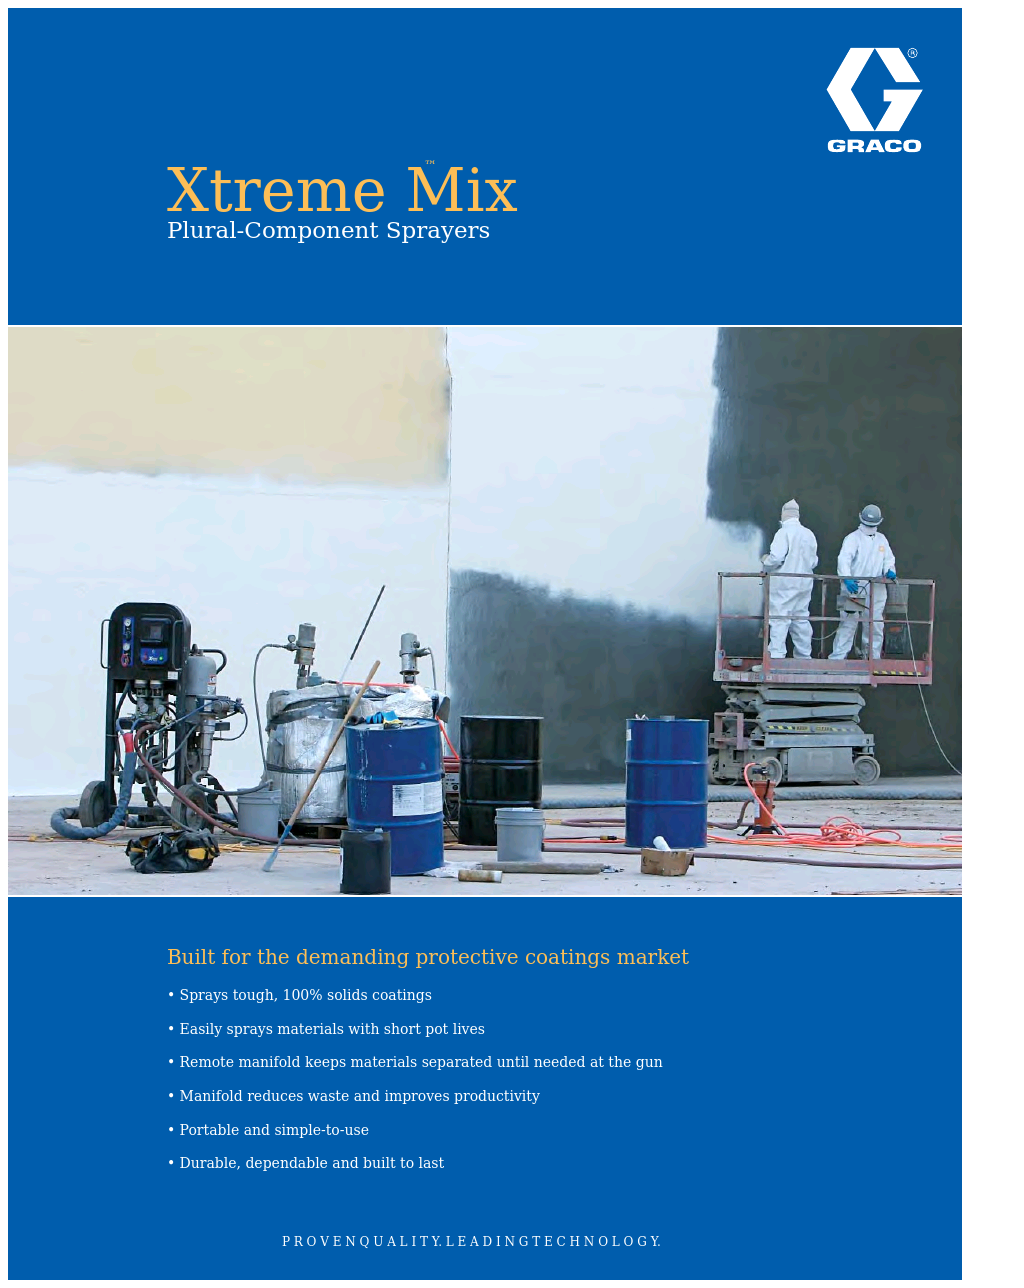 Xtreme Mix XTR703